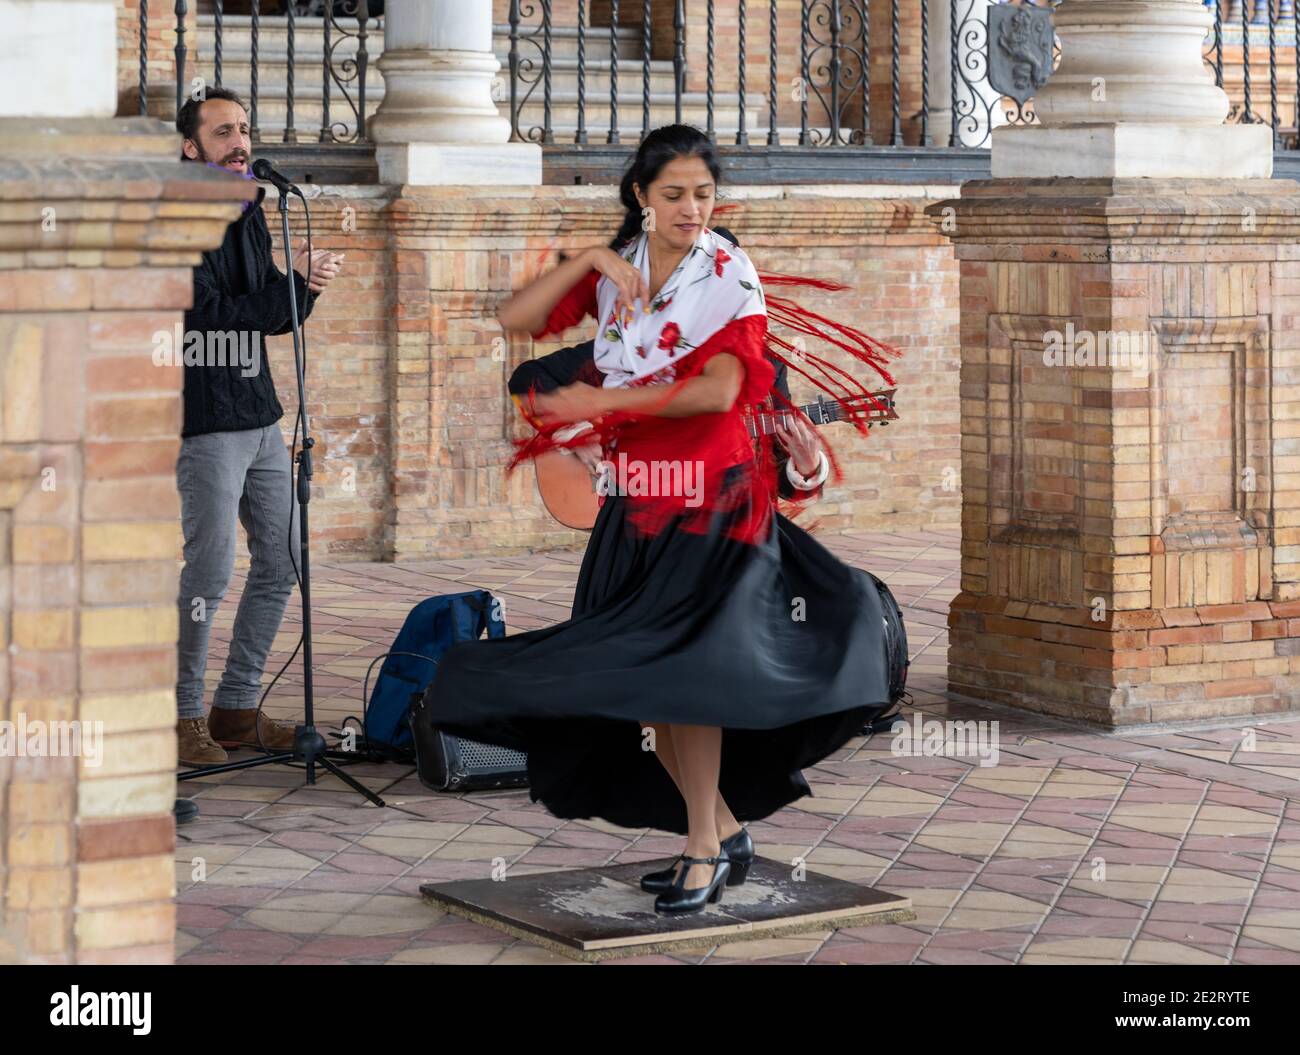 Séville, Espagne - 10 janvier 2021 : danseuse passionnée de flamenco dansant en vêtements colorés sur la Plaza de Espana à Séville Banque D'Images